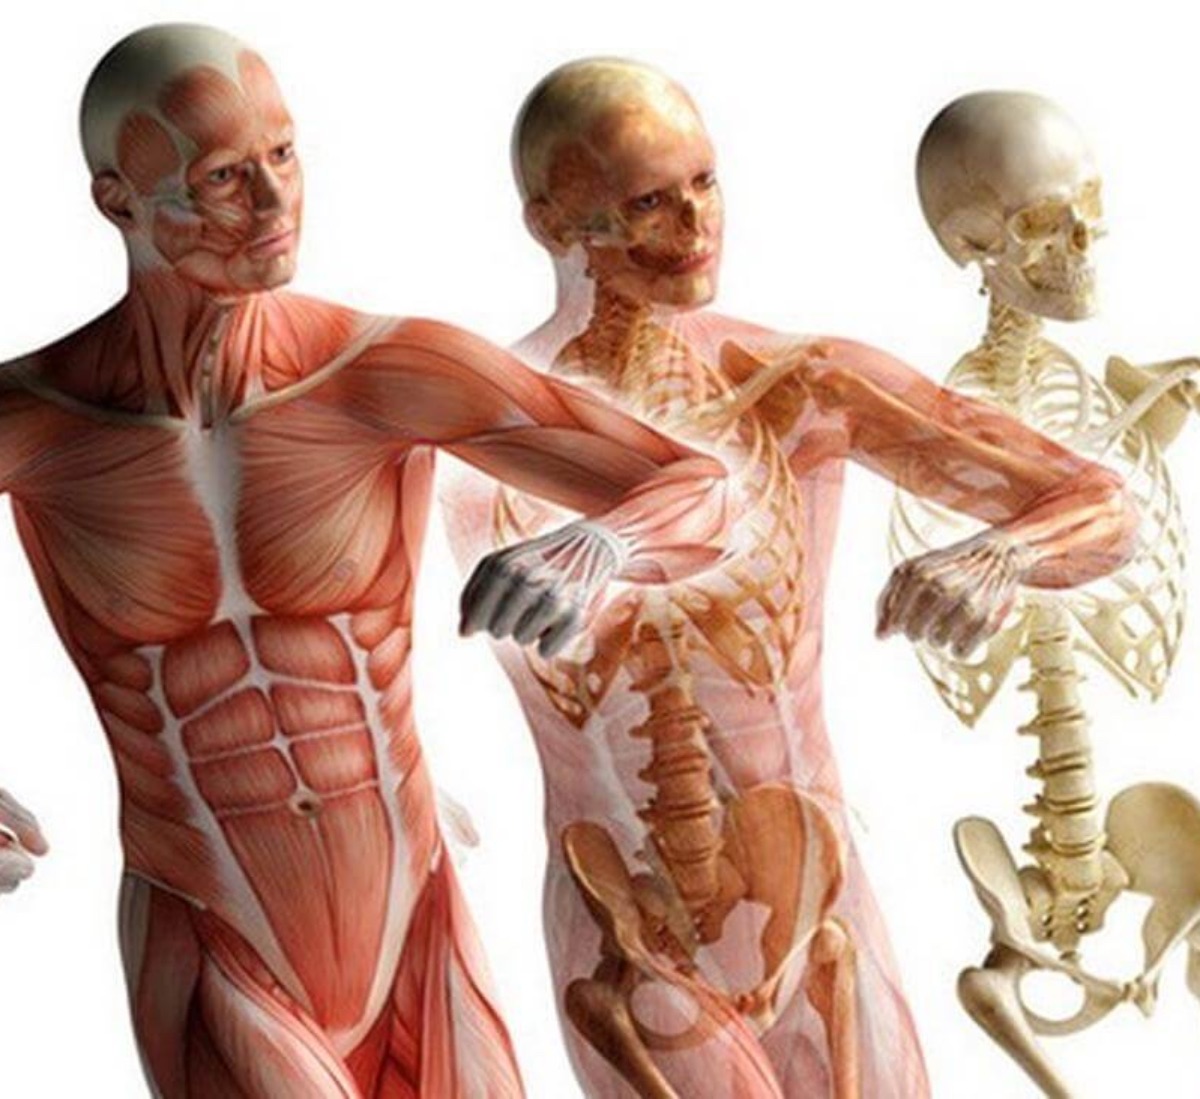 Костно-мышечная система человека